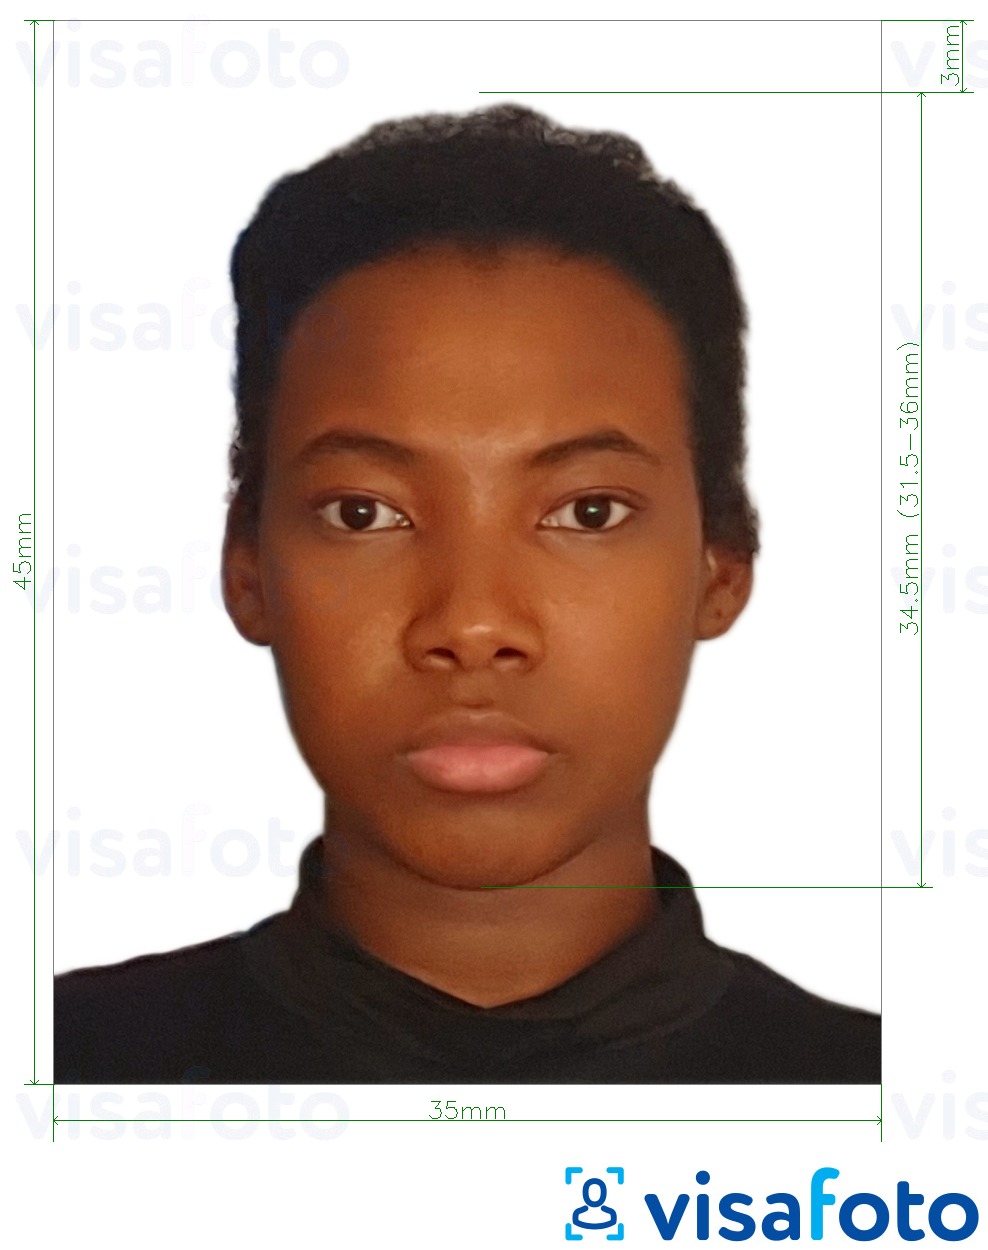 Voorbeeld van foto voor Benin paspoort 3.5x4.5 cm (35x45 mm) met exacte maatspecificatie